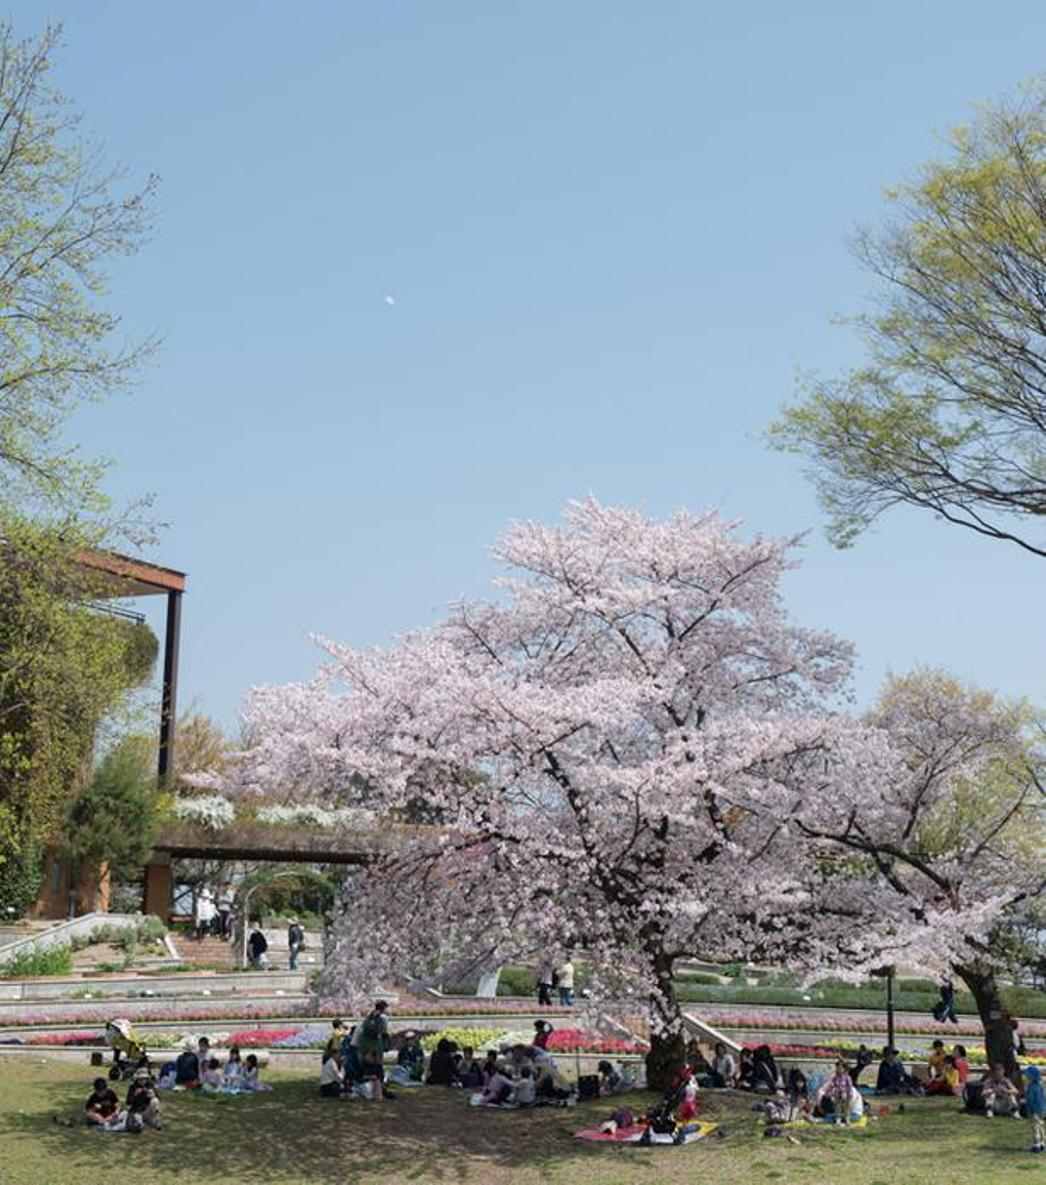 Pohon Sakura besar di atas bukit merupakan spot tujuan utama. Di sini pengunjung bisa melakukan aktifitas jalan-jalan musim semi sambil melihat binatang